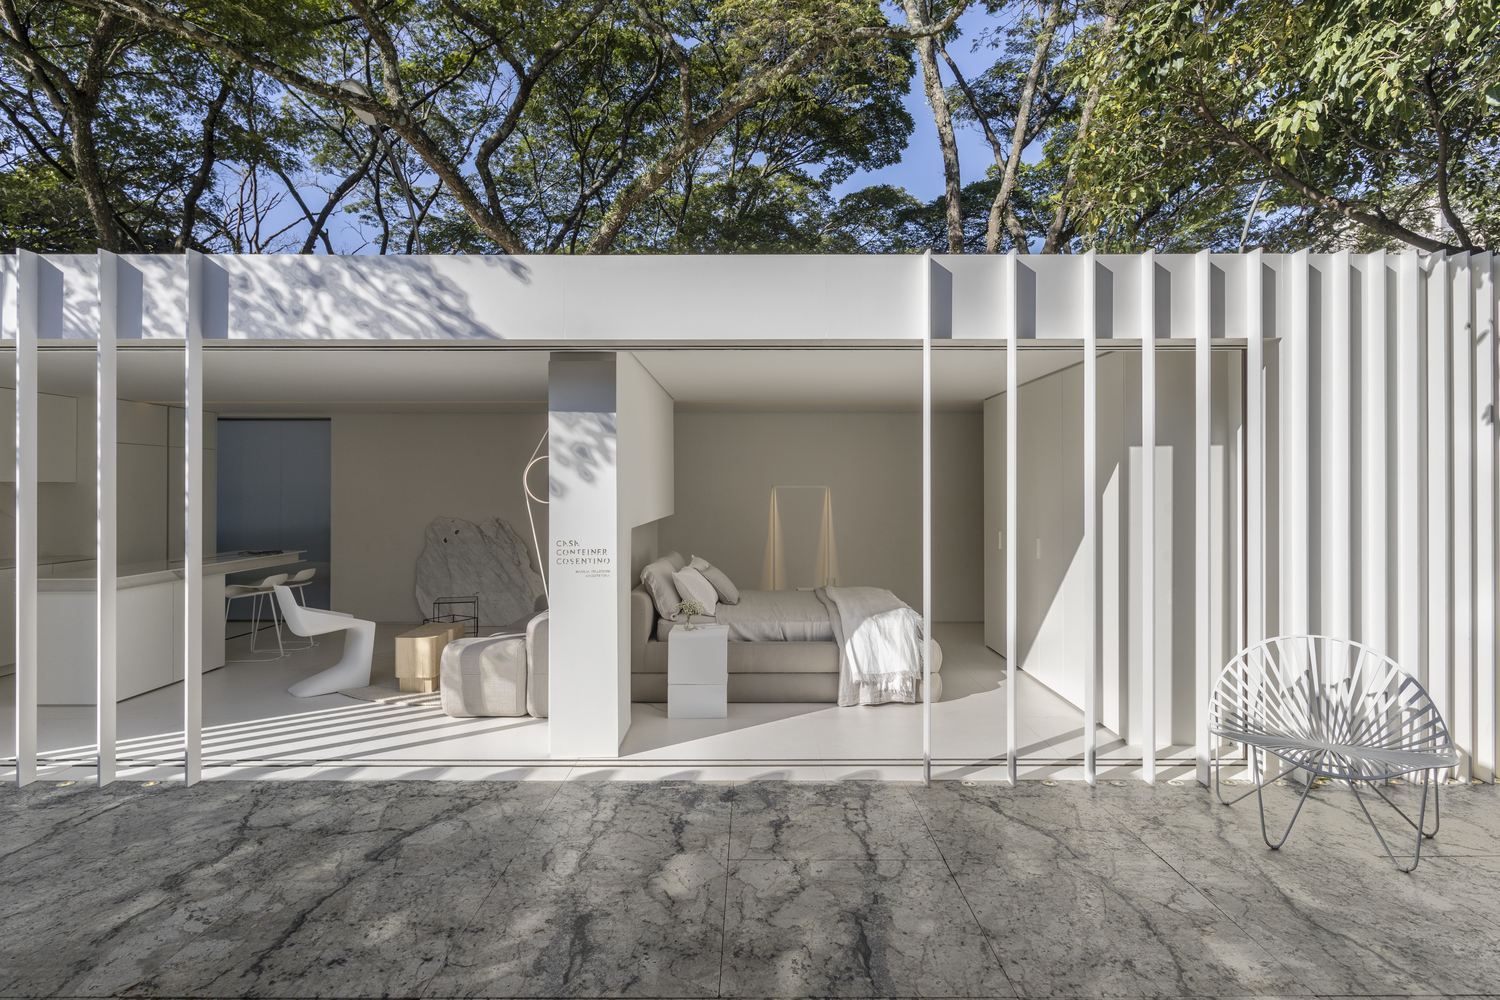 Мраморный дизайн в доме из контейнера: впечатляющие фото из Бразилии